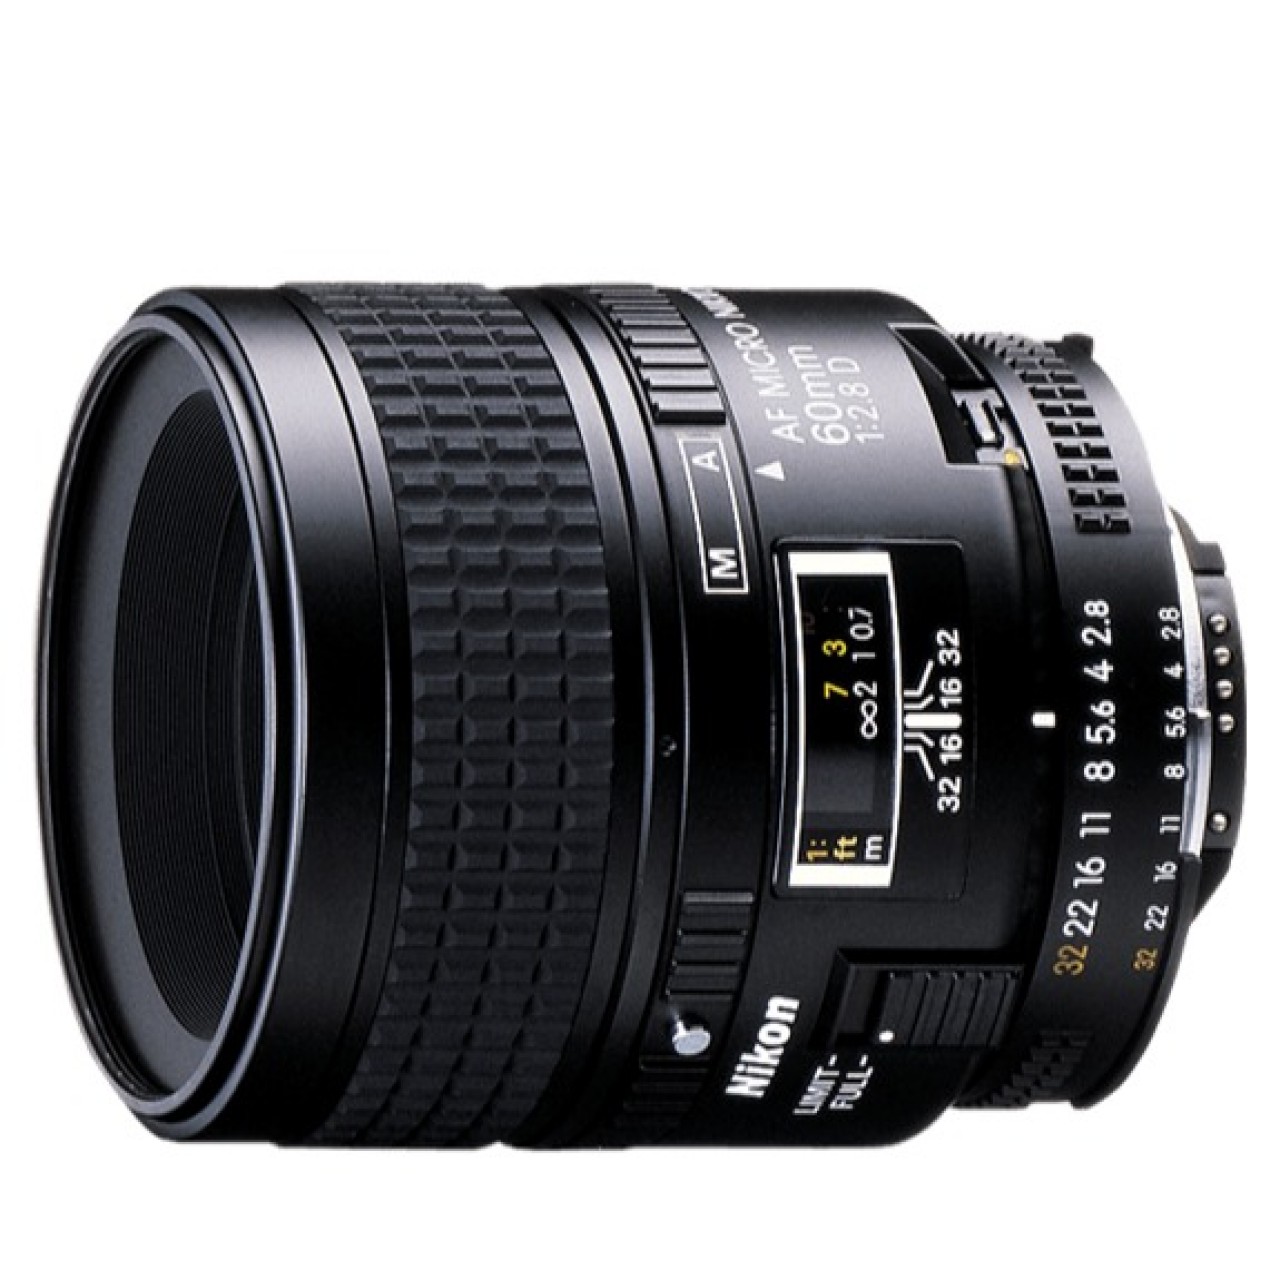 AF Micro-Nikkor 60mm f/2.8D Lens For Nikon DSLR Camera